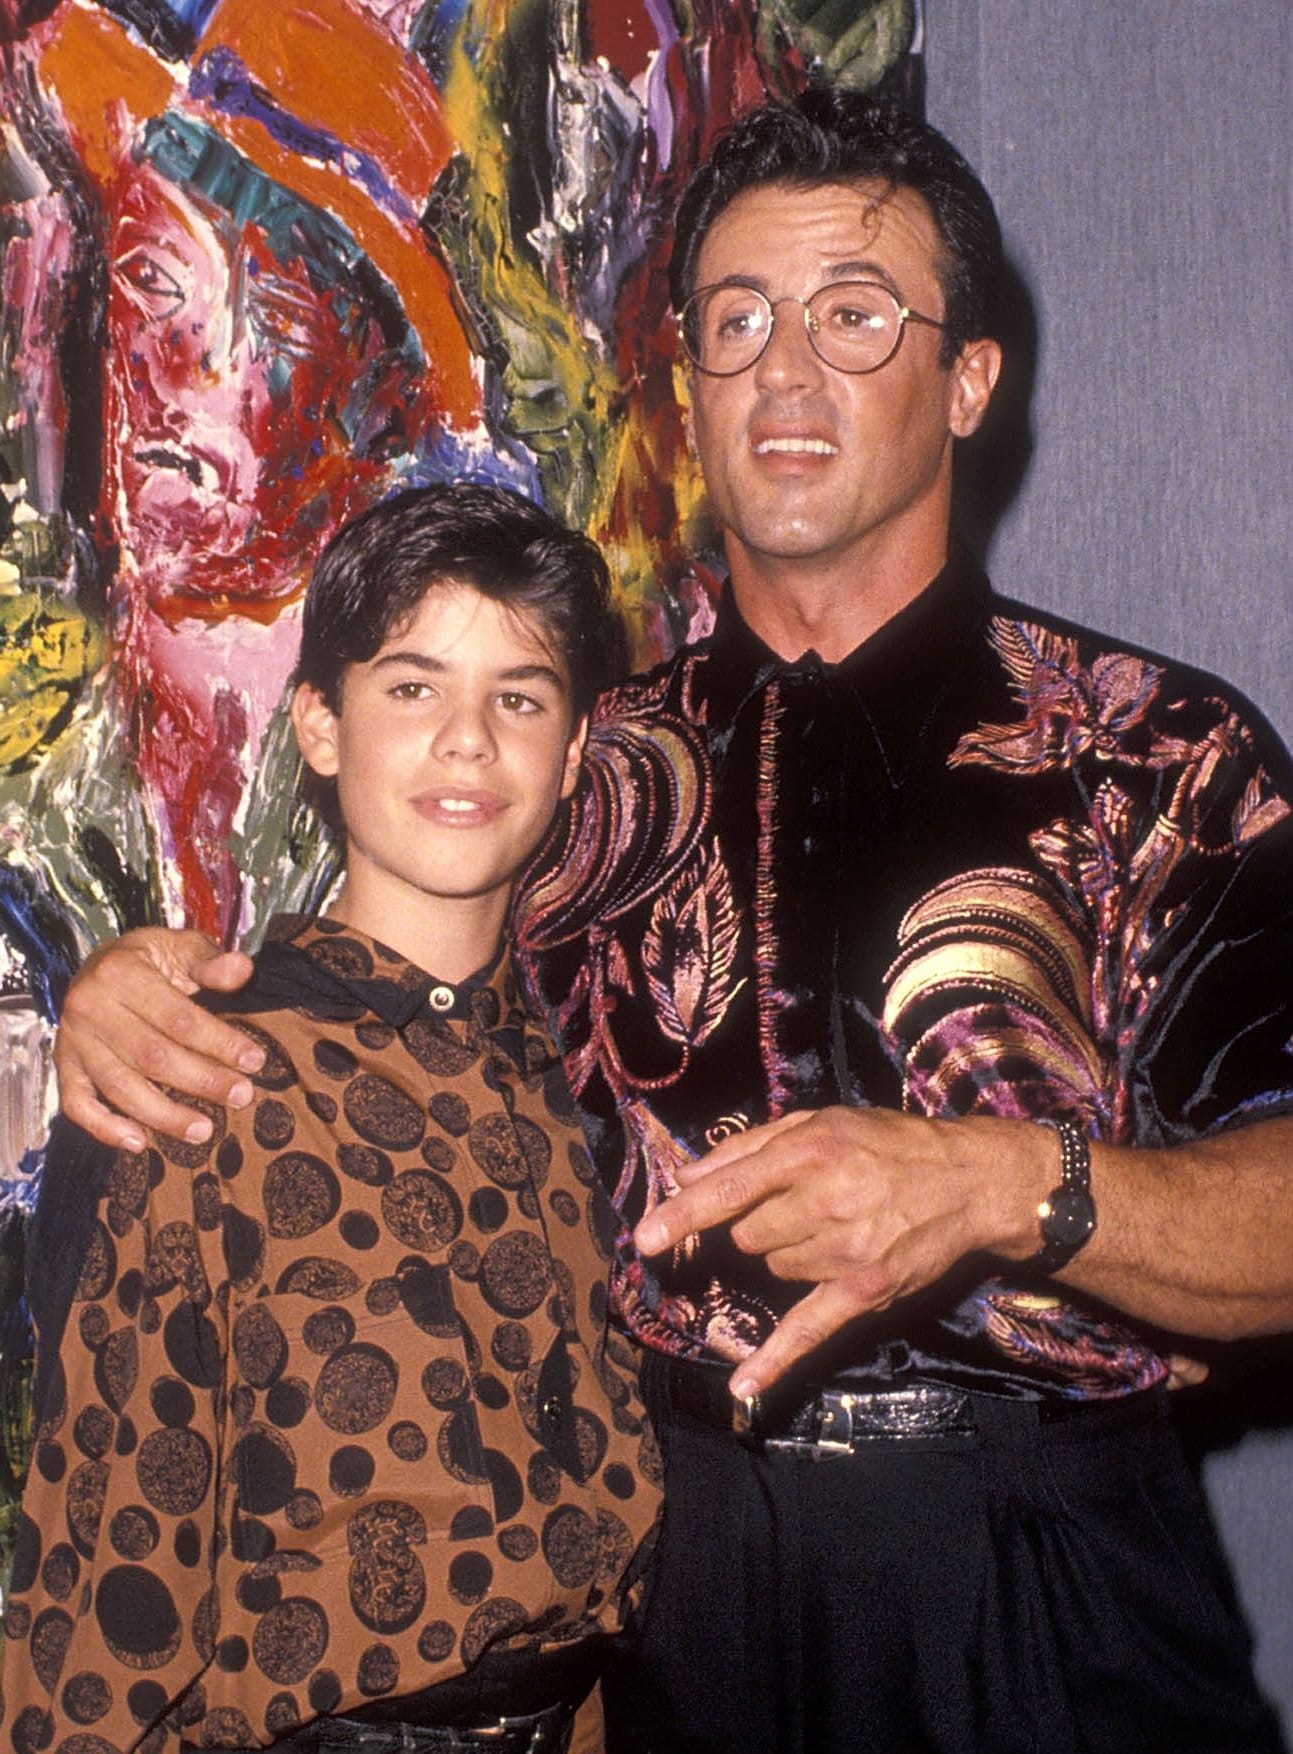 Sylvester Stallone und sein Sohn bei einem Event 1990.